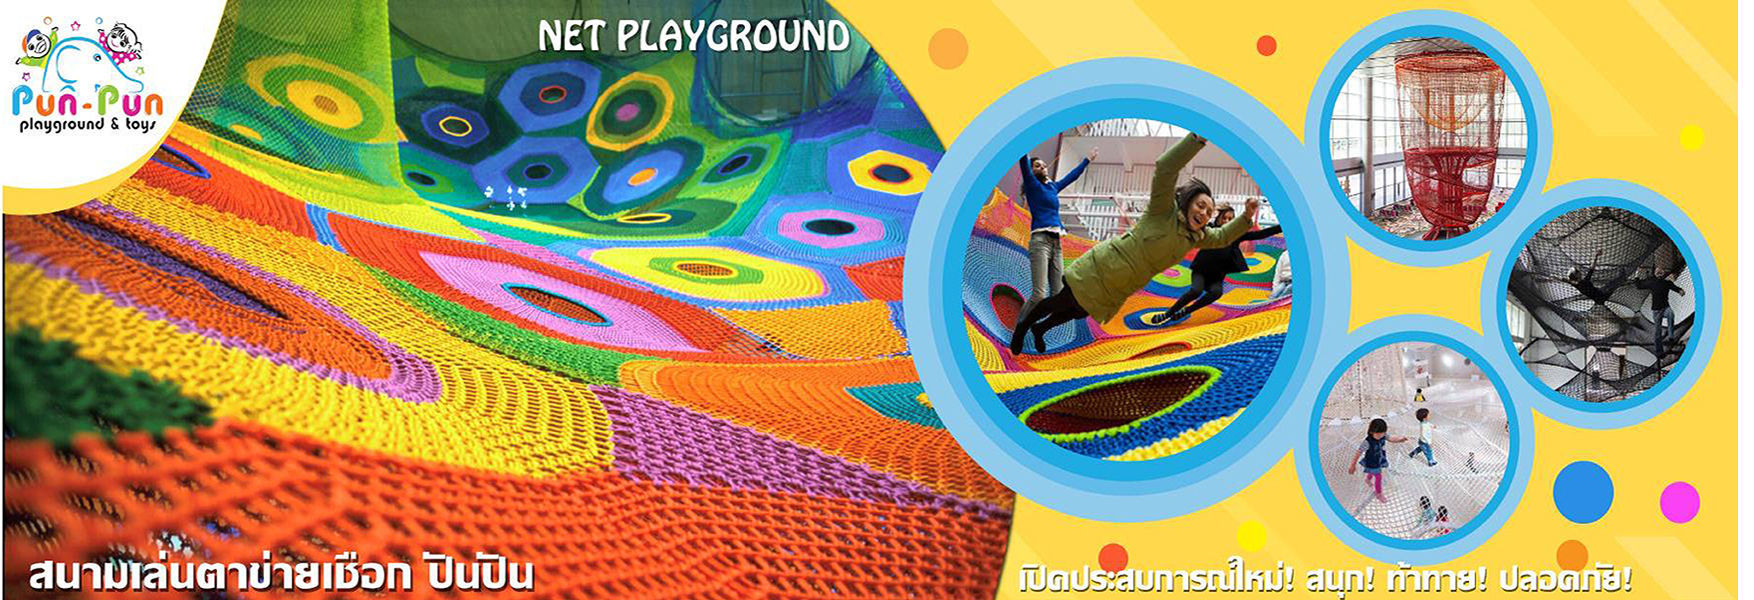 Net Playground เครื่องเล่นตาข่ายเชือก